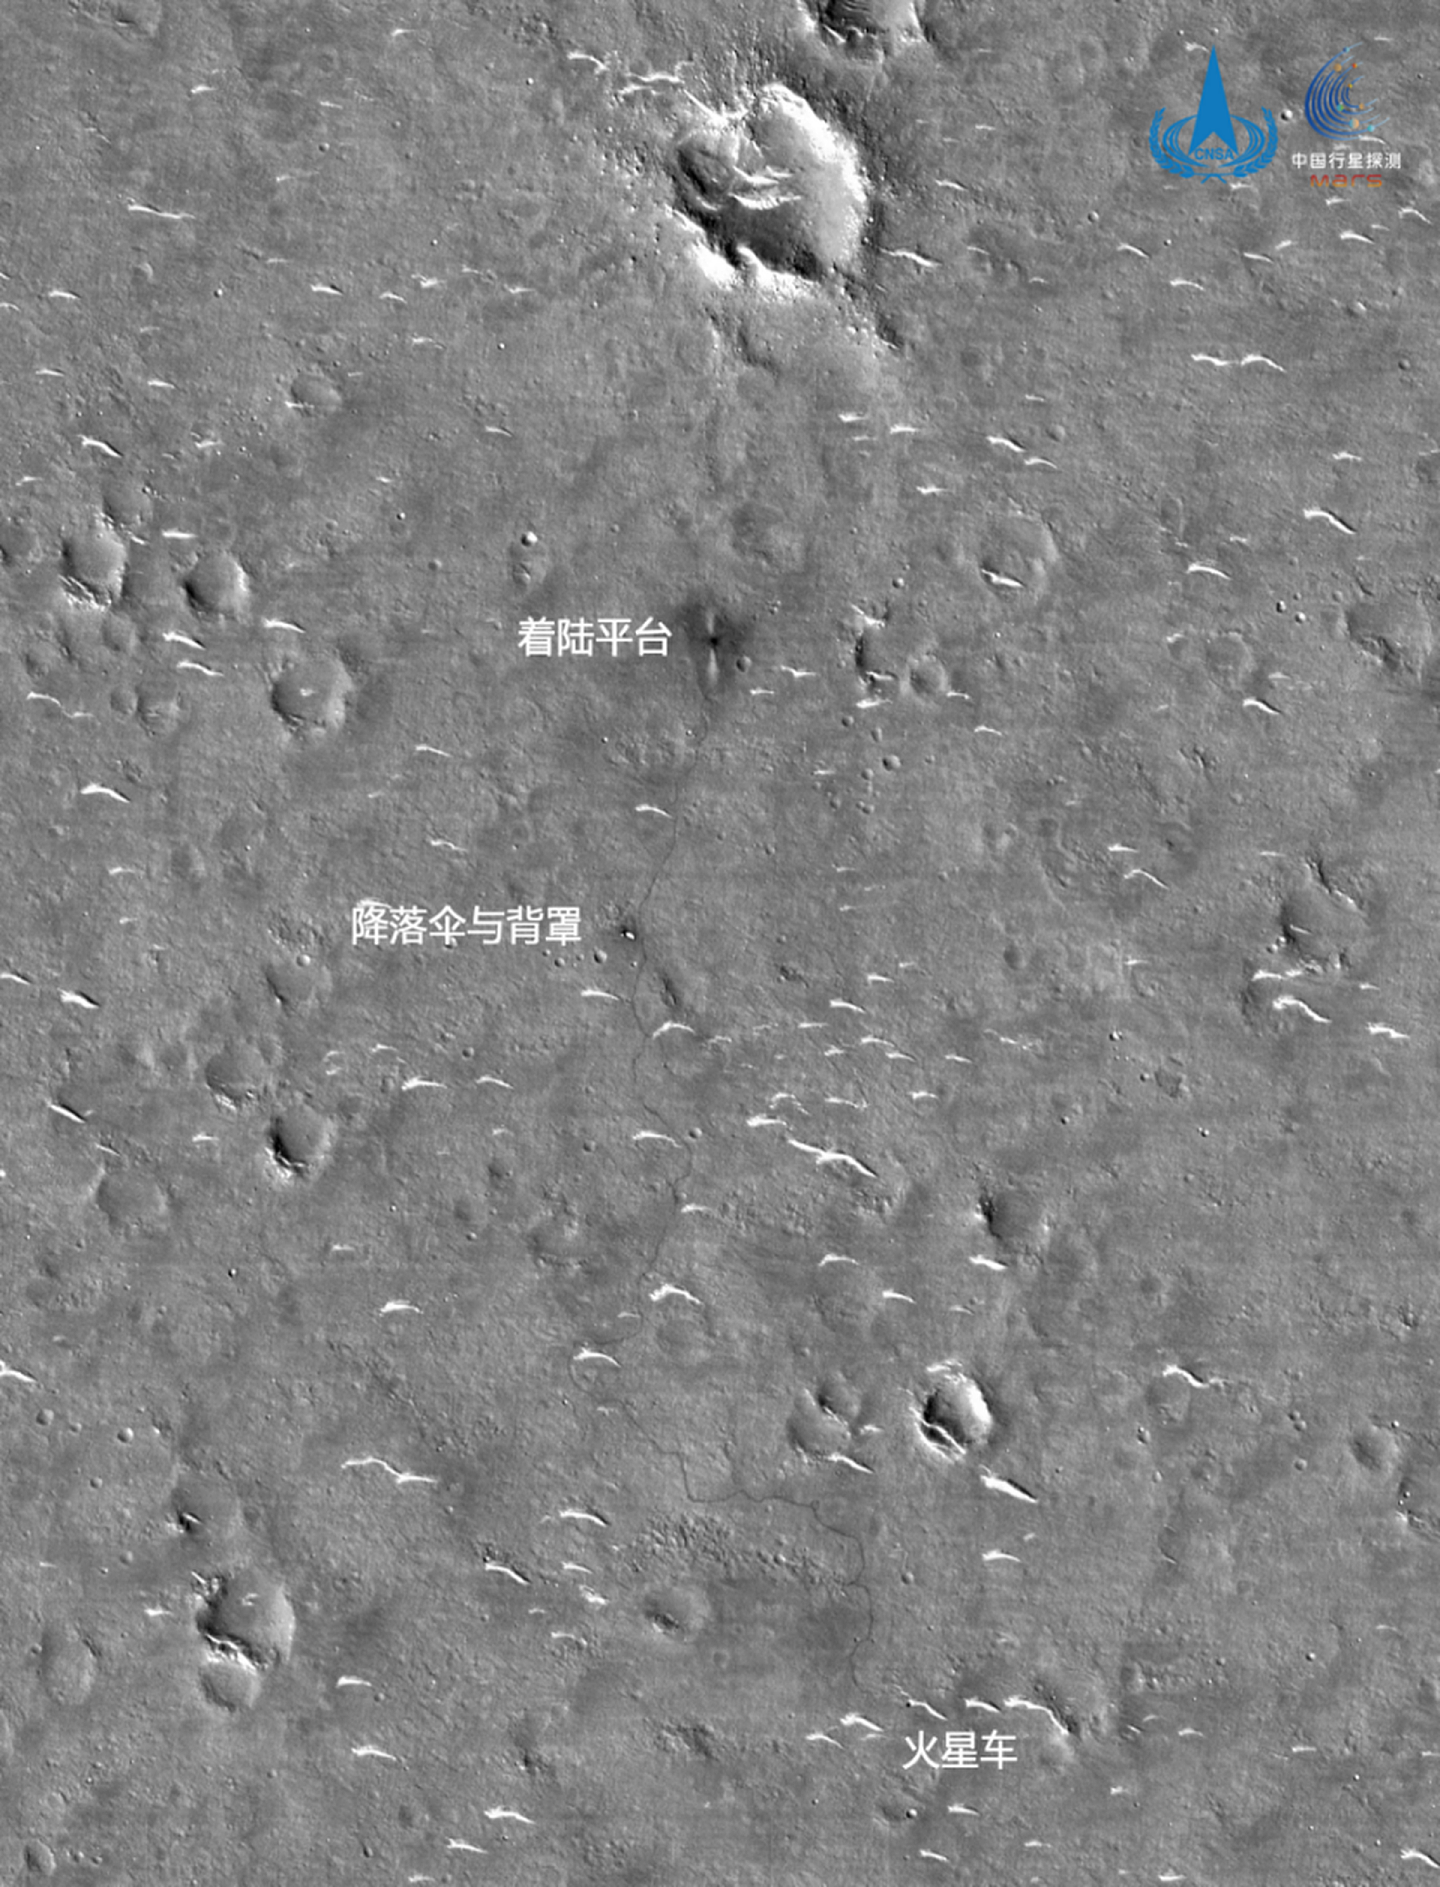 高分辨率相机拍摄“祝融号”巡视区影像。（微信@中国探月工程）